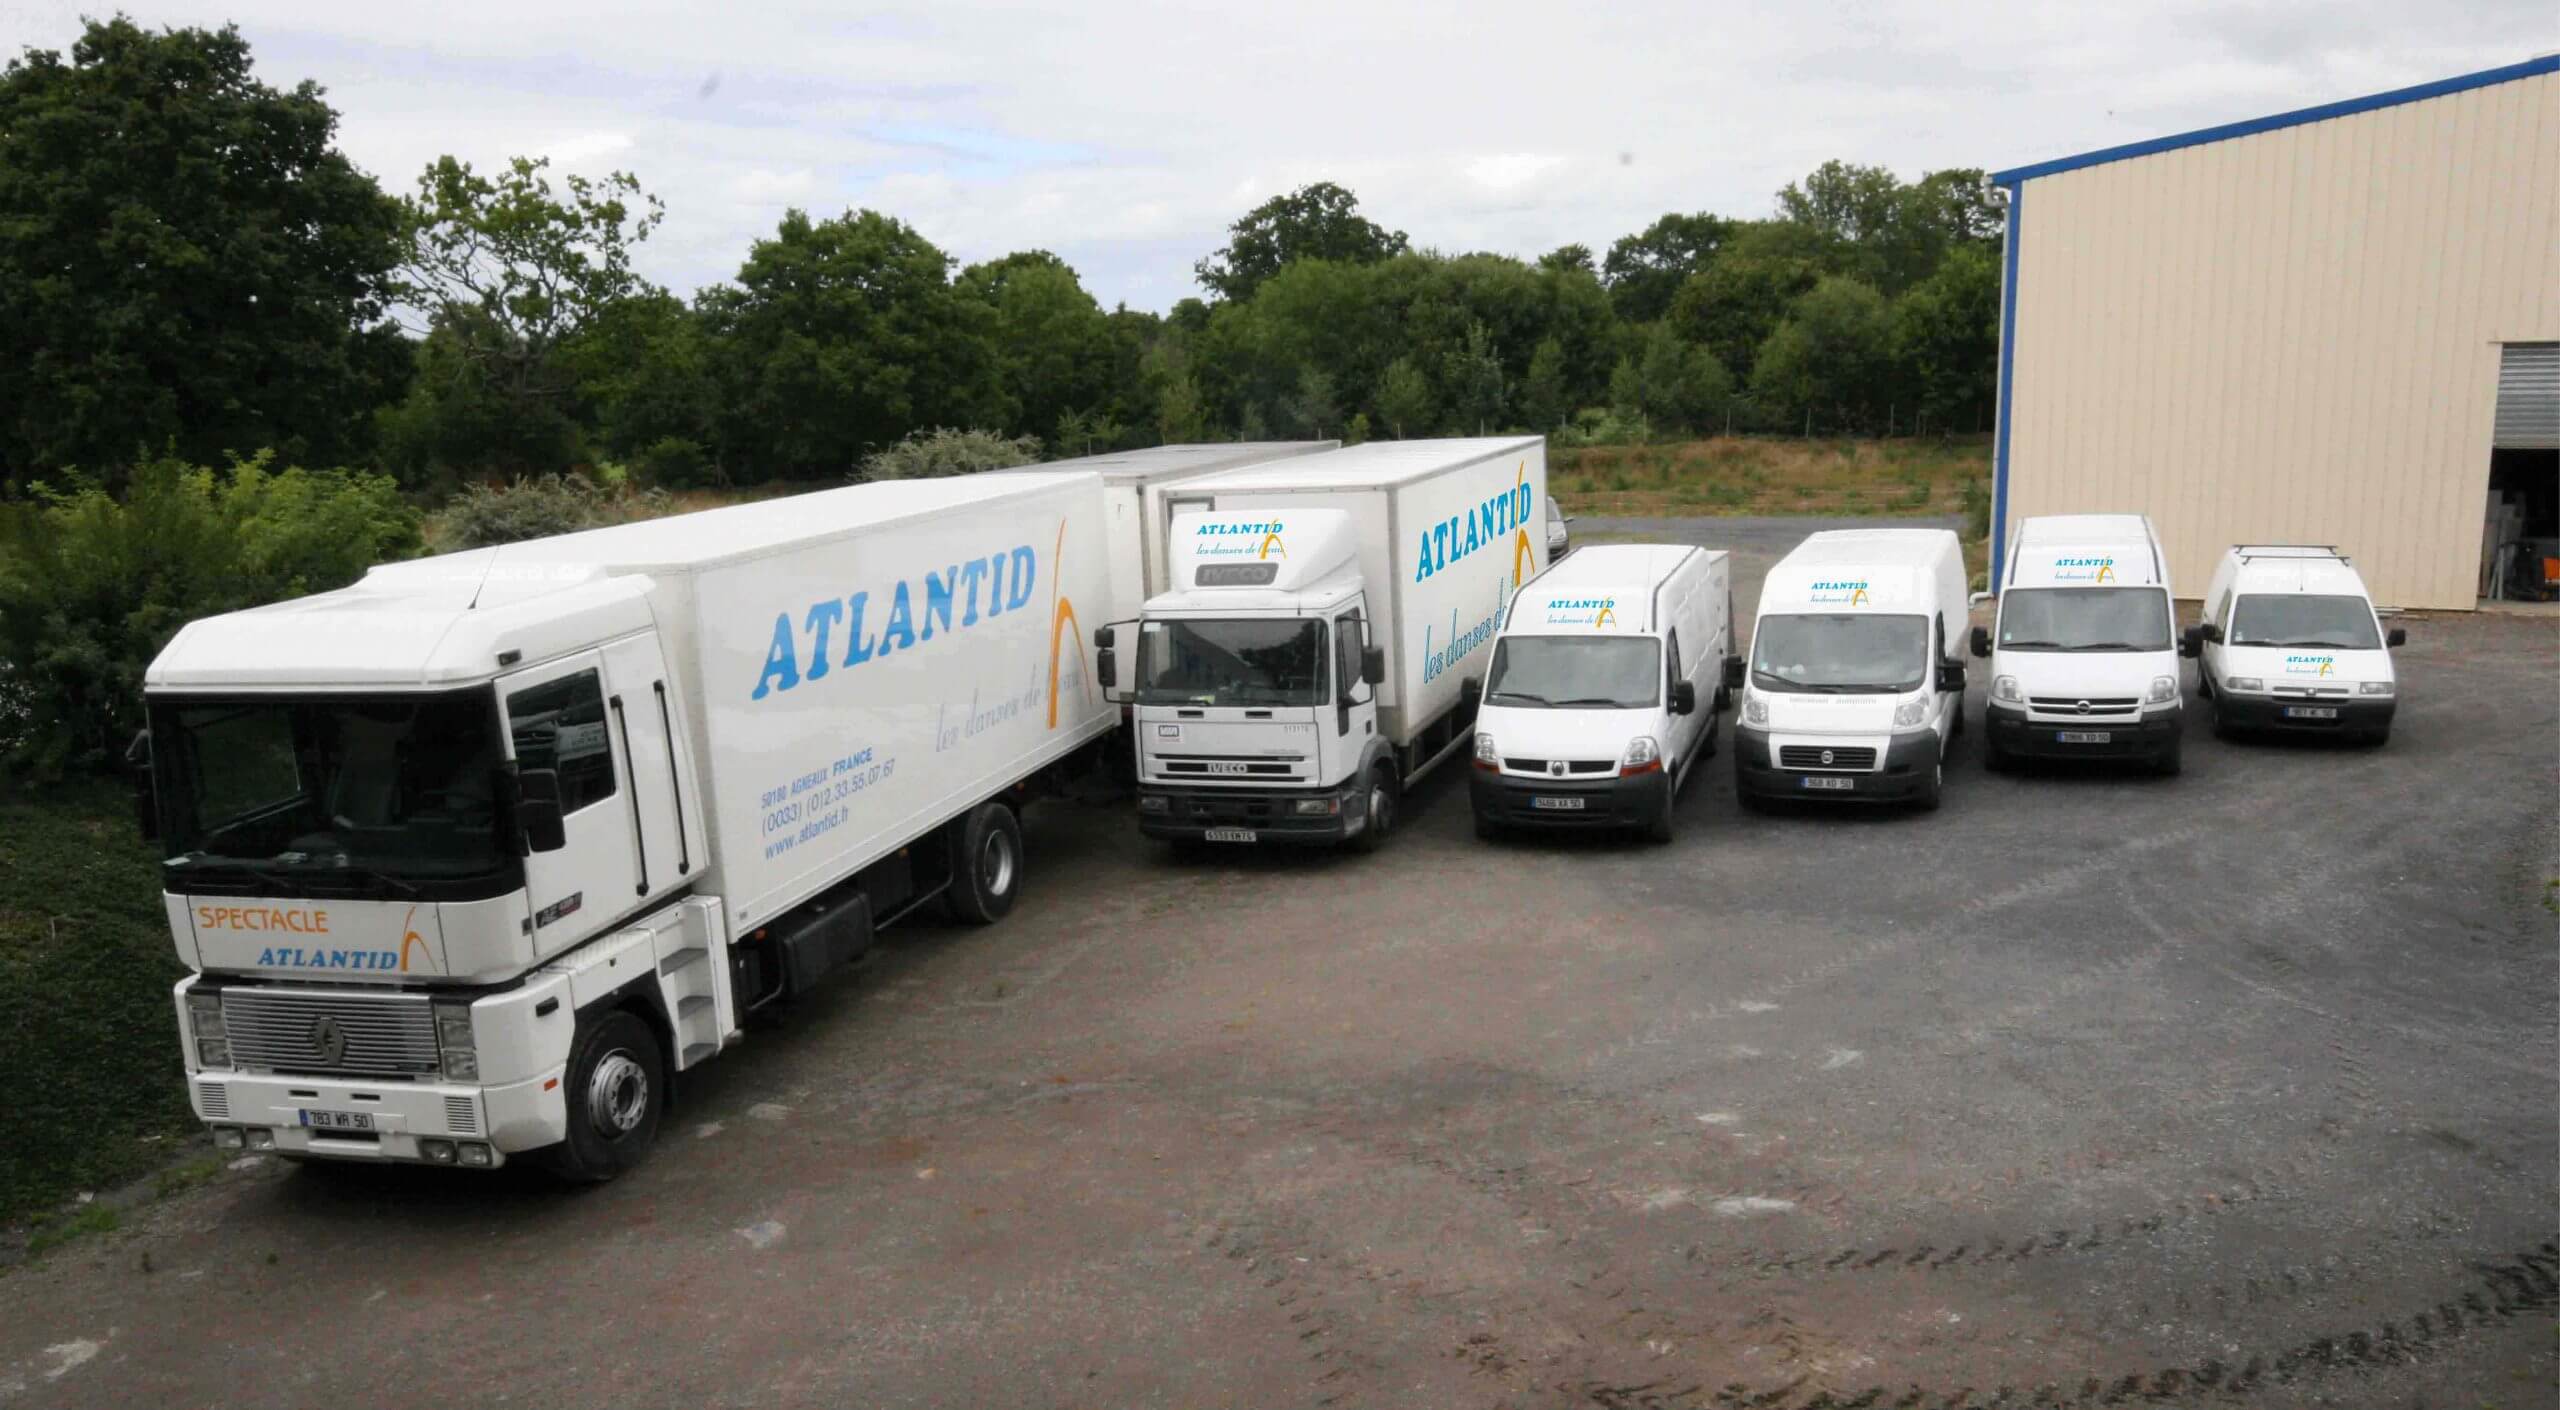 Atlantid - Foto de los camiones de la empresa Atlantid